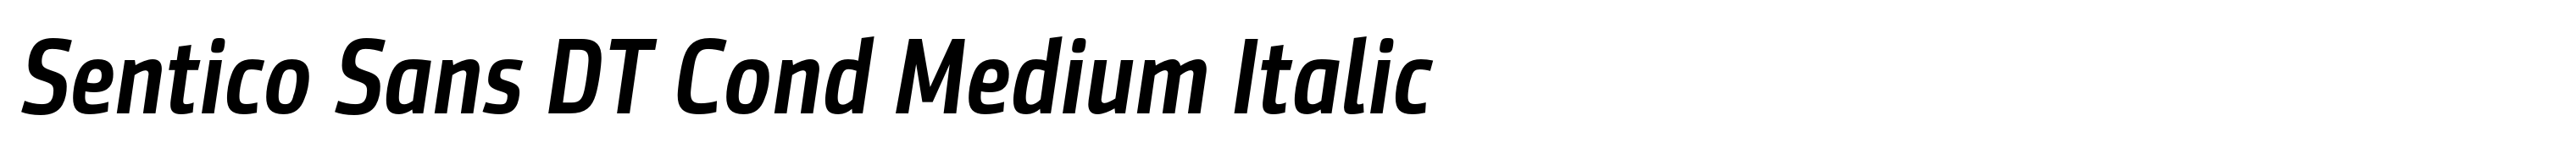 Sentico Sans DT Cond Medium Italic